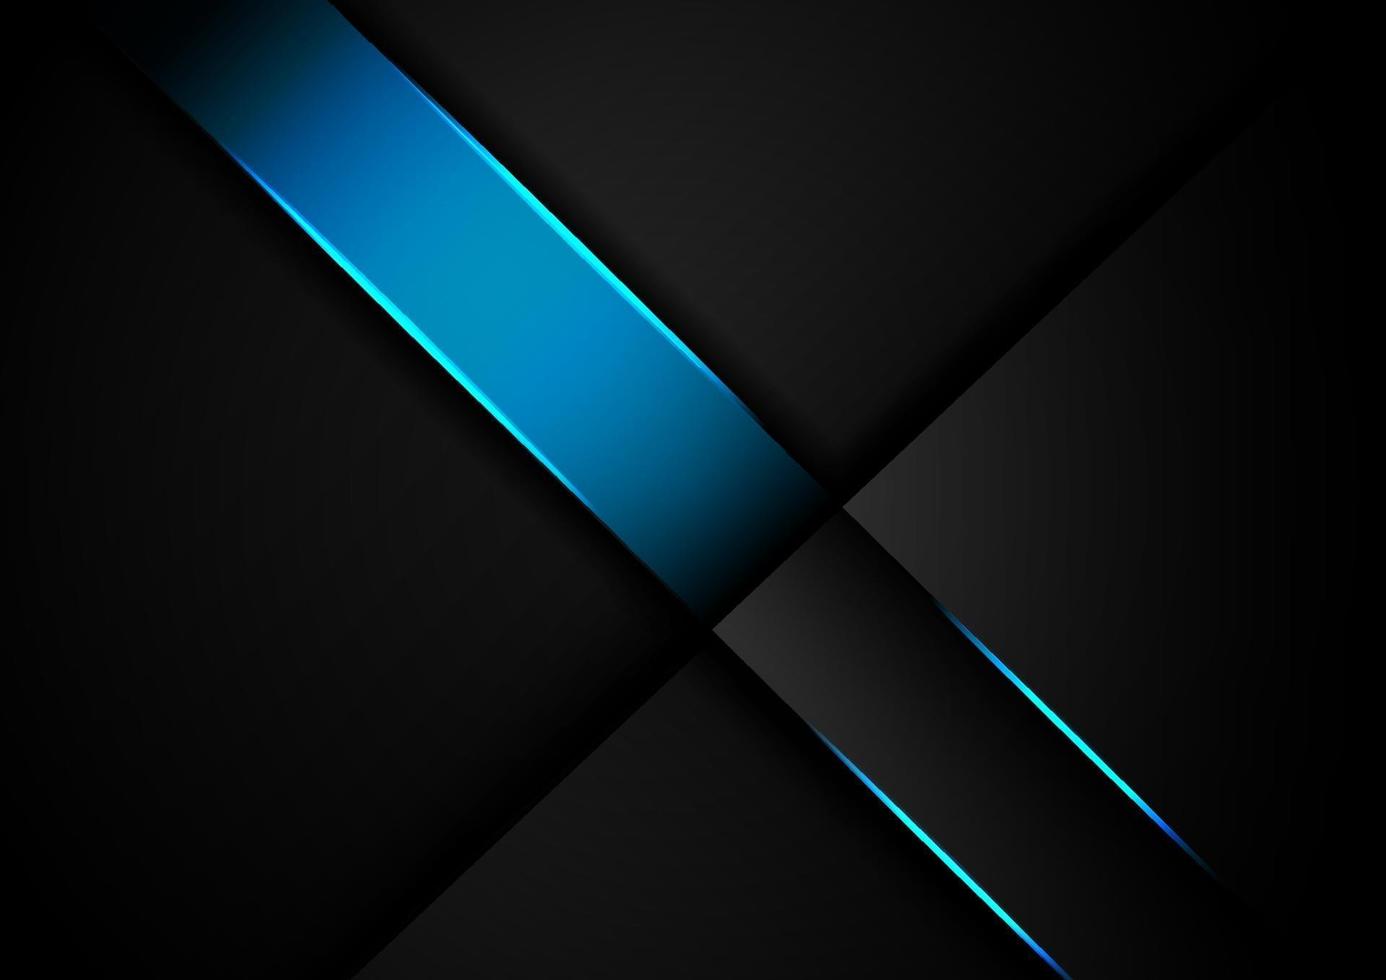 capas superpuestas de color azul claro abstracto sobre fondo negro con luz brillante de neón azul. vector